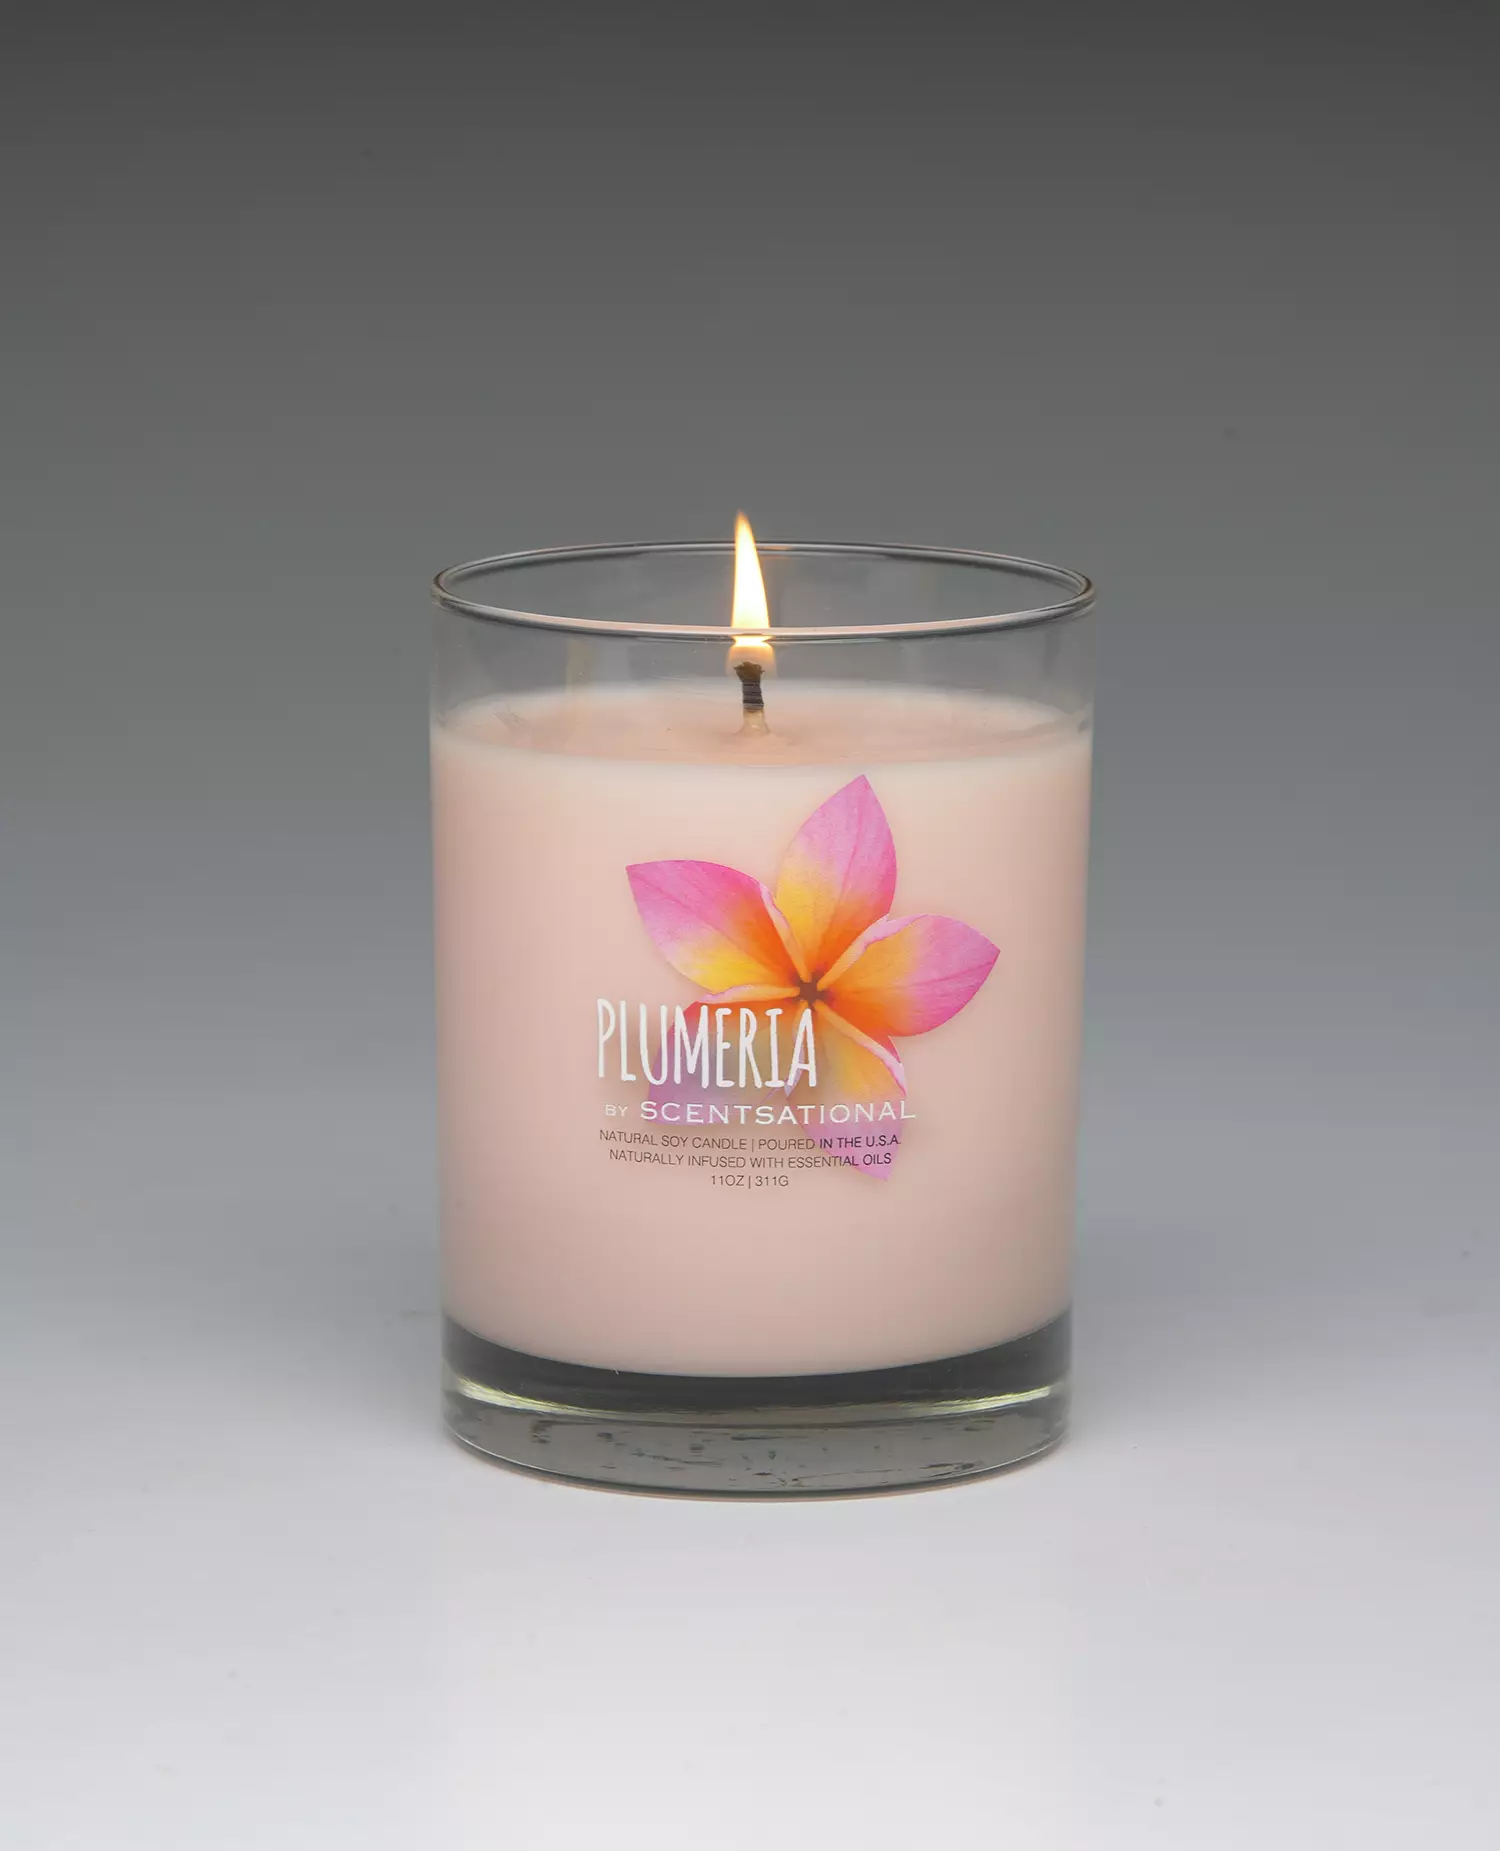 Plumeria – 11oz scented candle burning